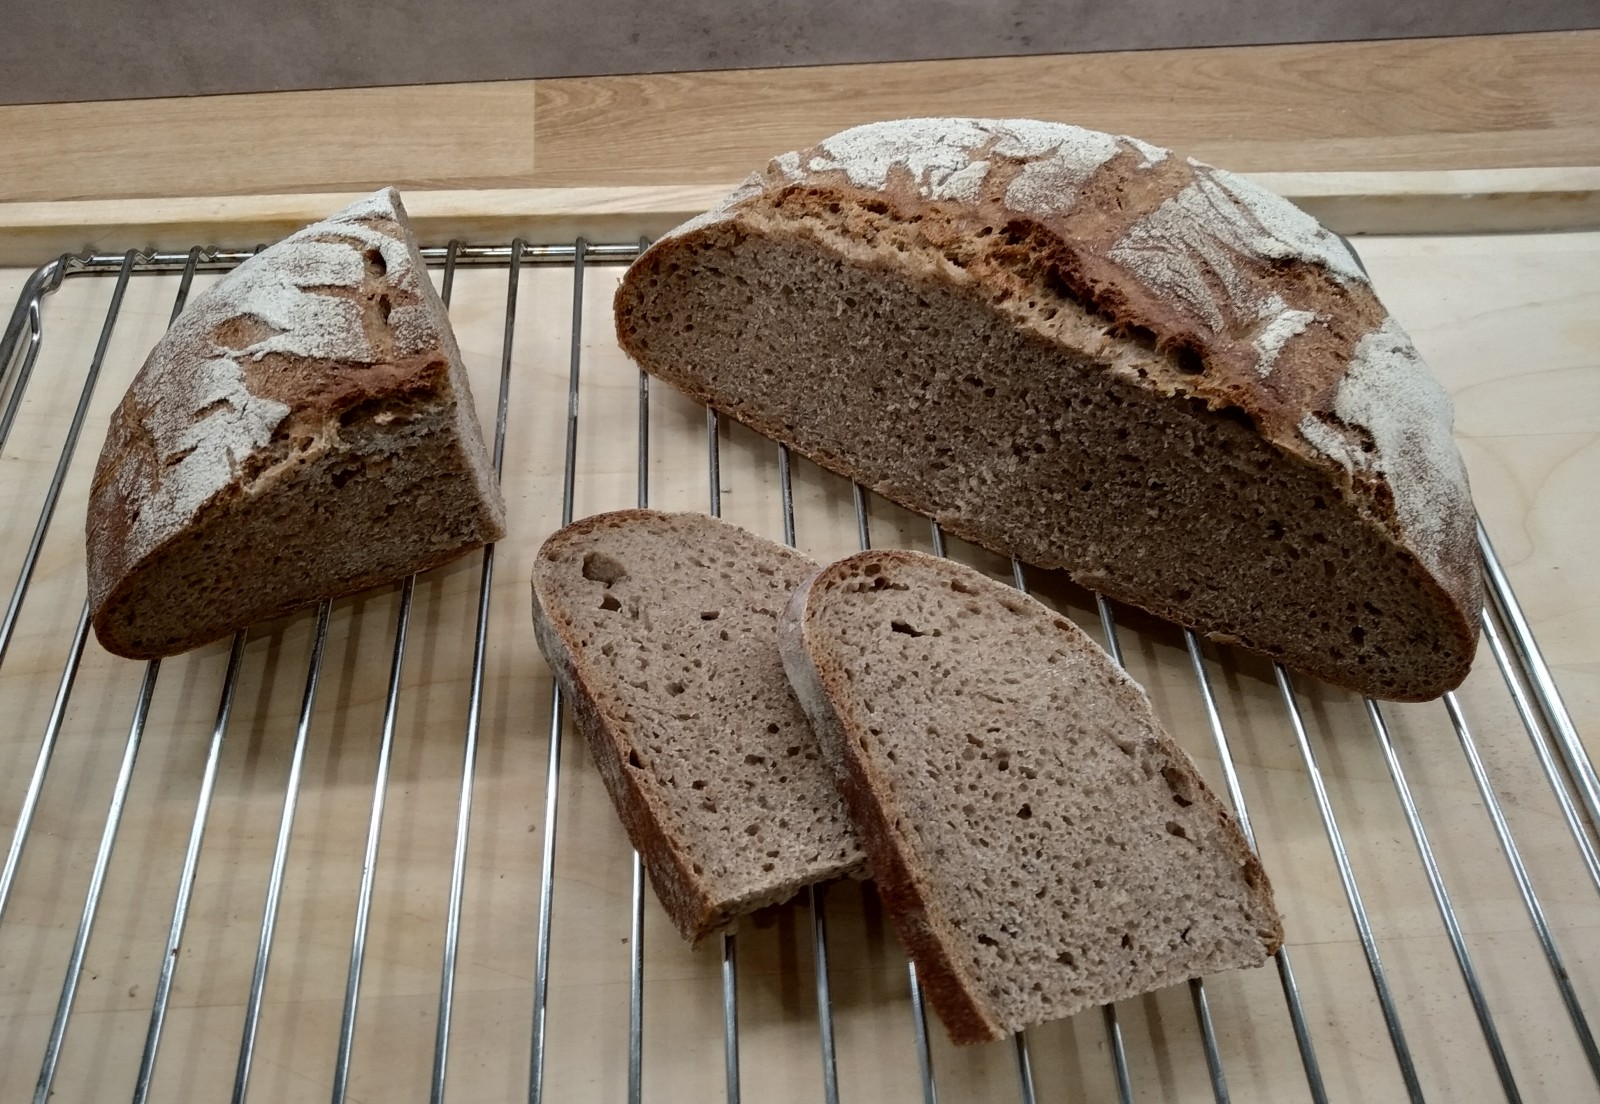 Pšenično-žitný chléb